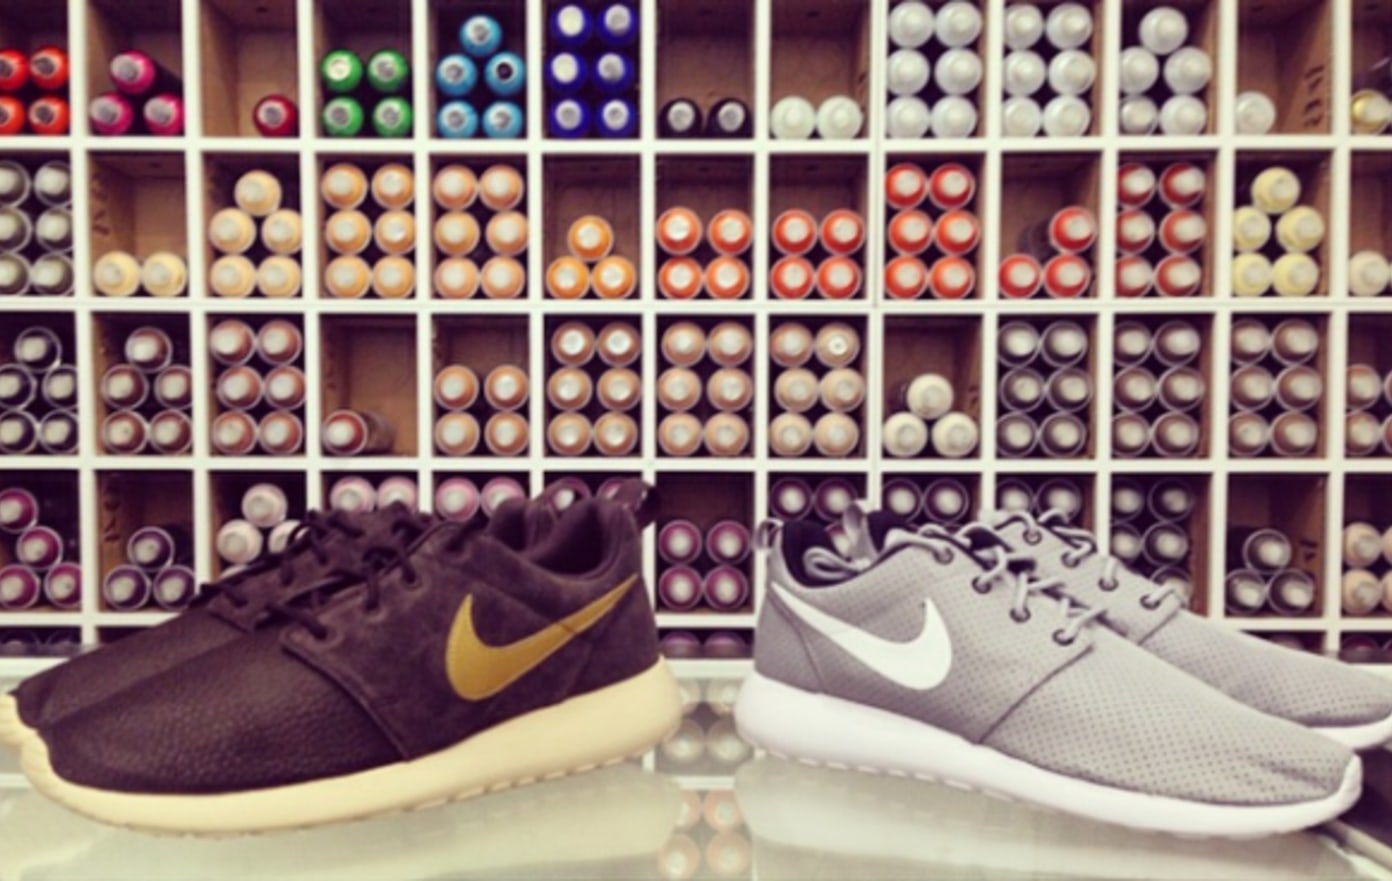 New Nike Roshe Run Styles Available at Shelflife | Shelflife